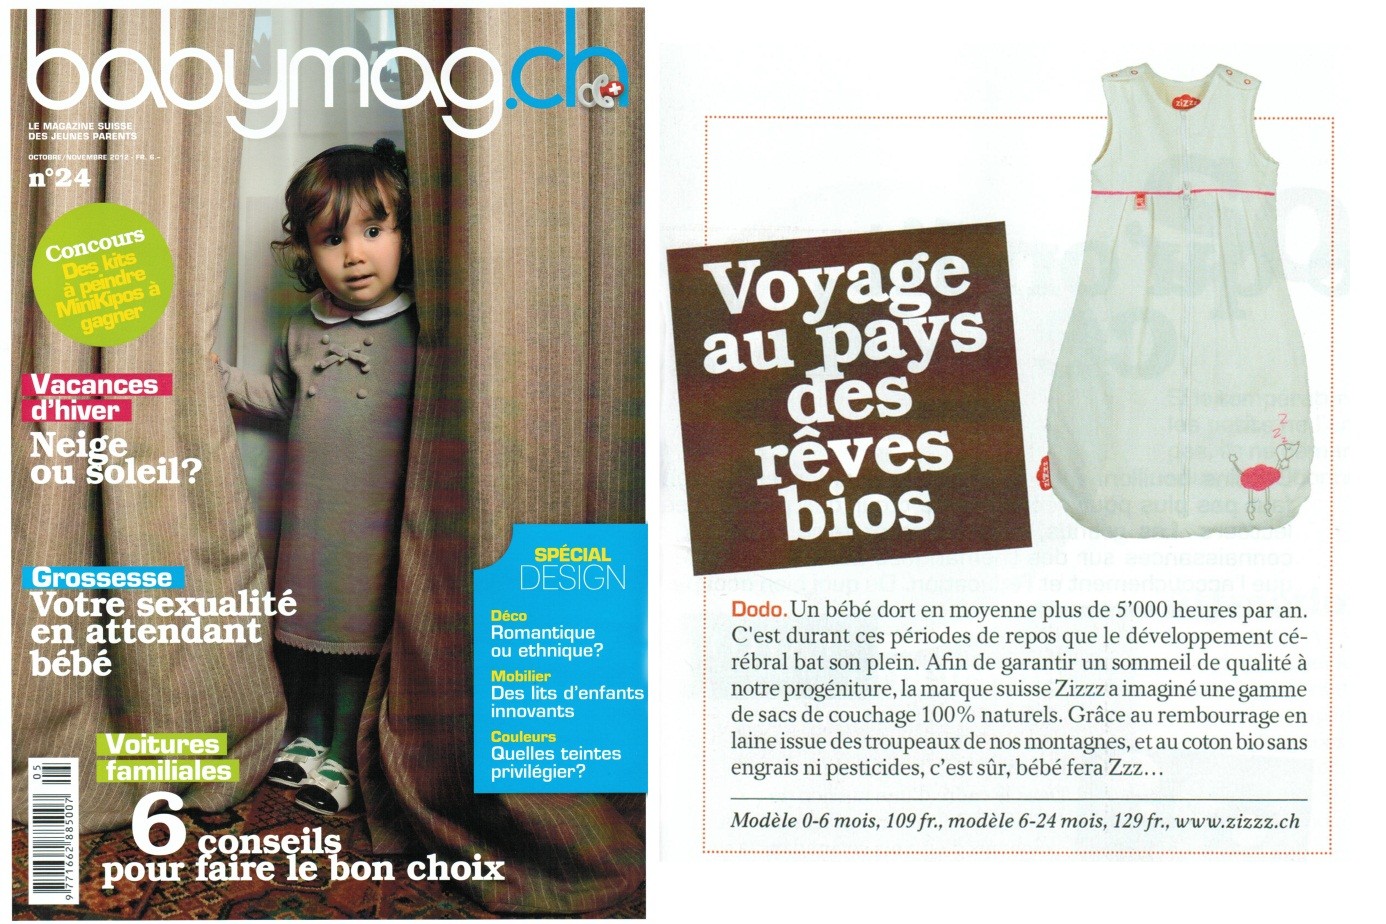 Photo de la couverture et de l'article sur Zizzz dans le magazine "Babymag.ch"